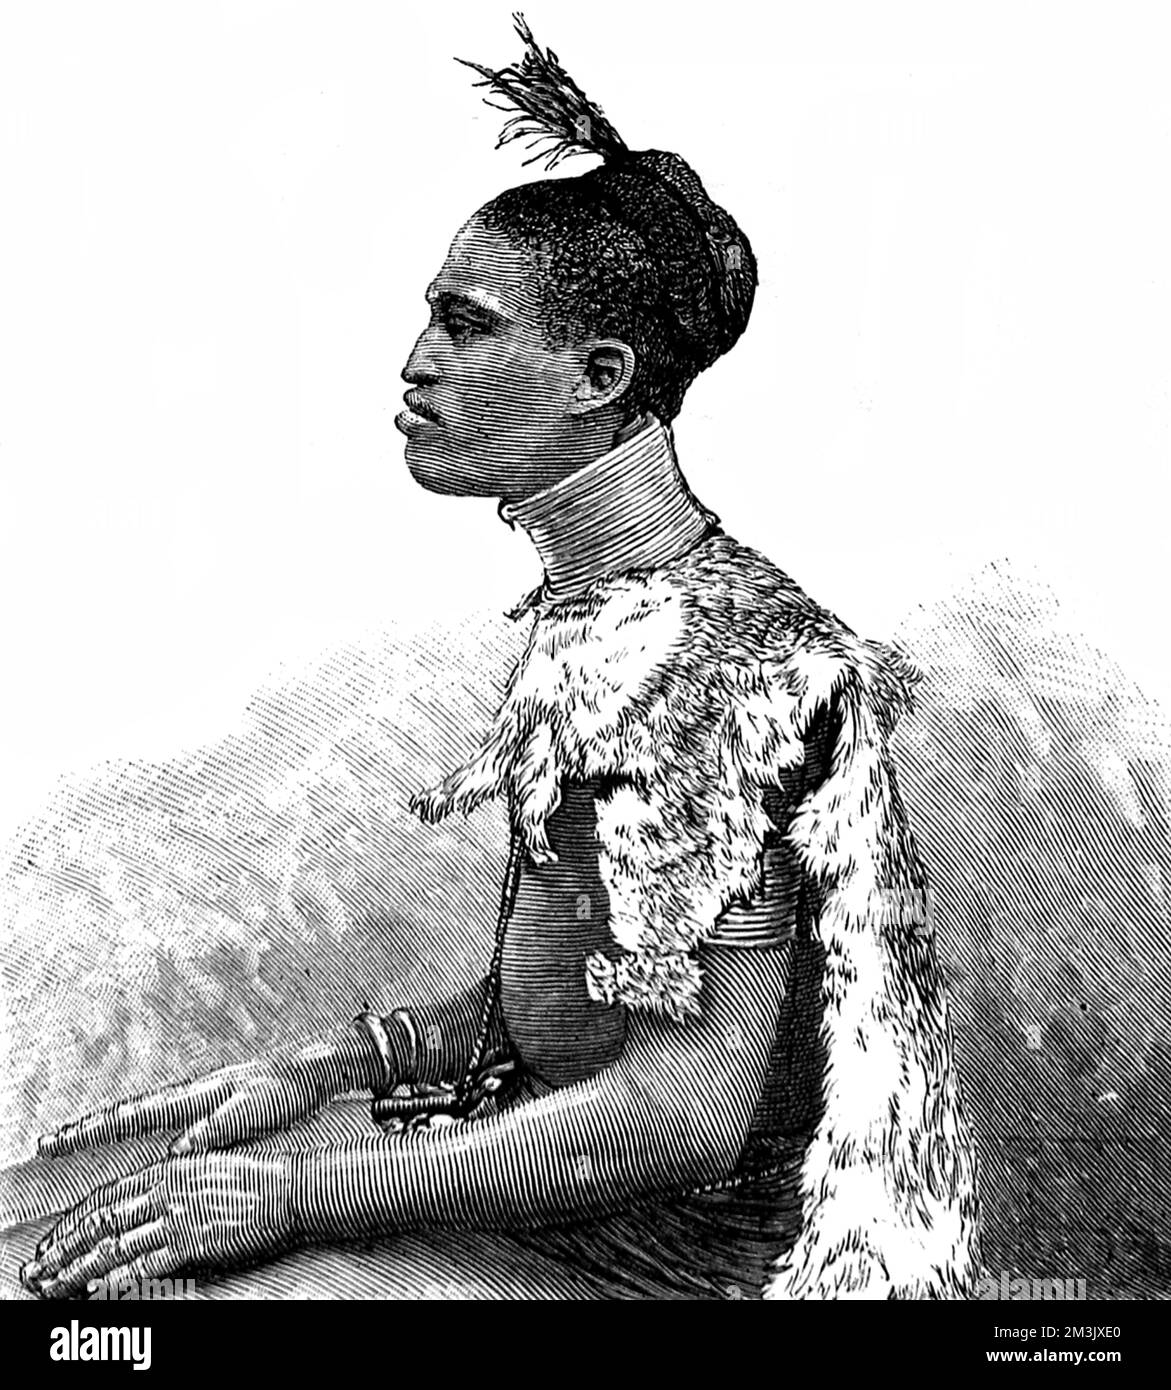 Un membro della tribù Shuli dell'Africa Centrale, che sono stati trovati nella zona governata da Emin Pasha, il Governatore della Provincia Equatoriale Egiziana. Data: 1887 Foto Stock